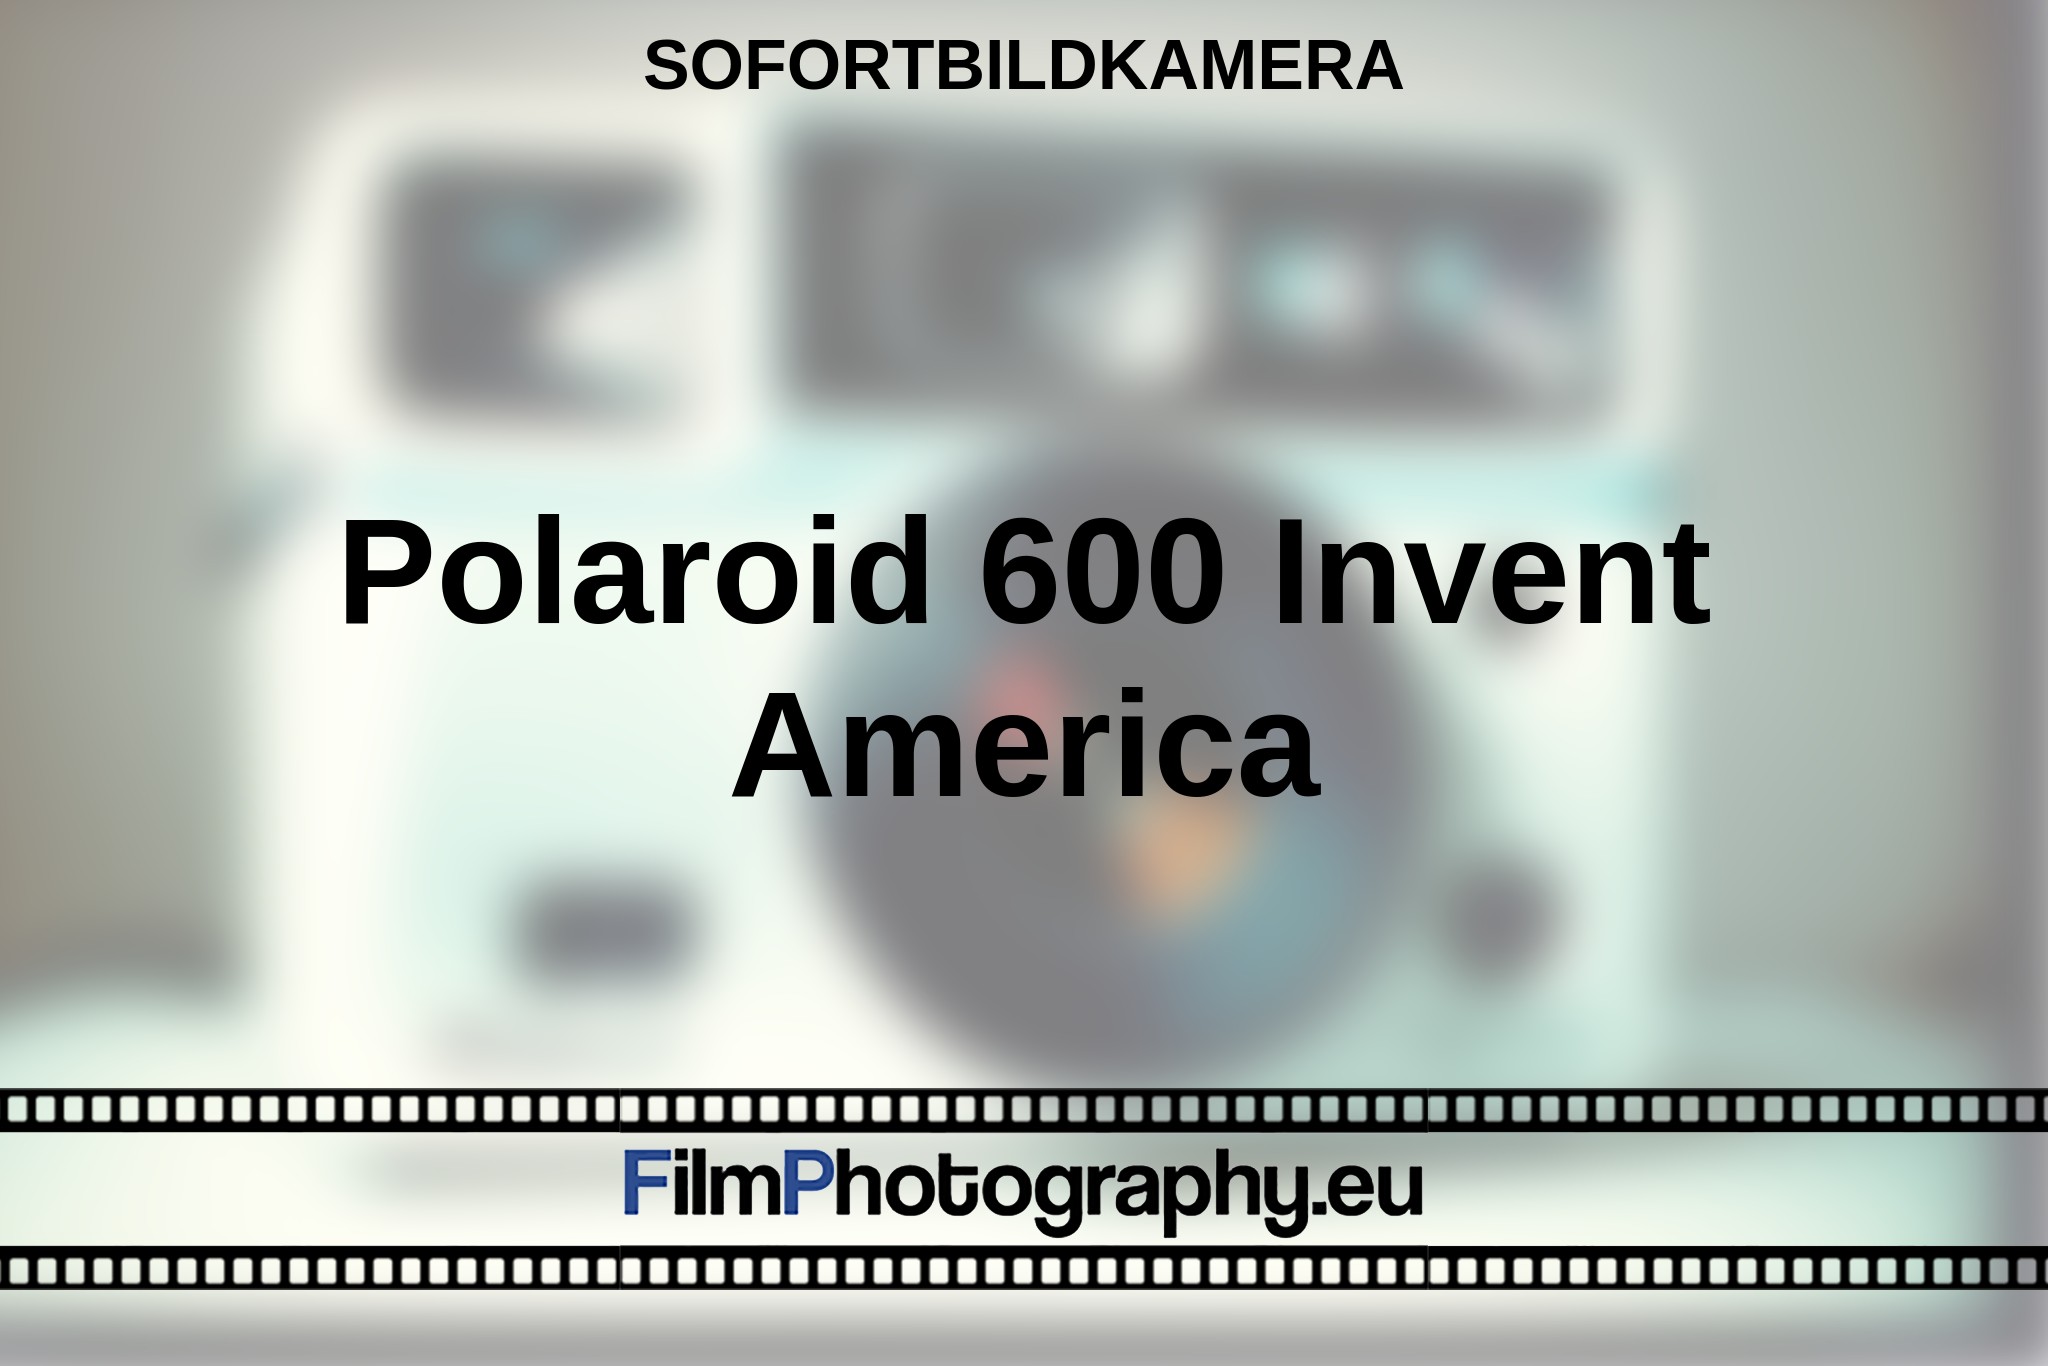 polaroid-600-invent-america-sofortbildkamera-bnv.jpg